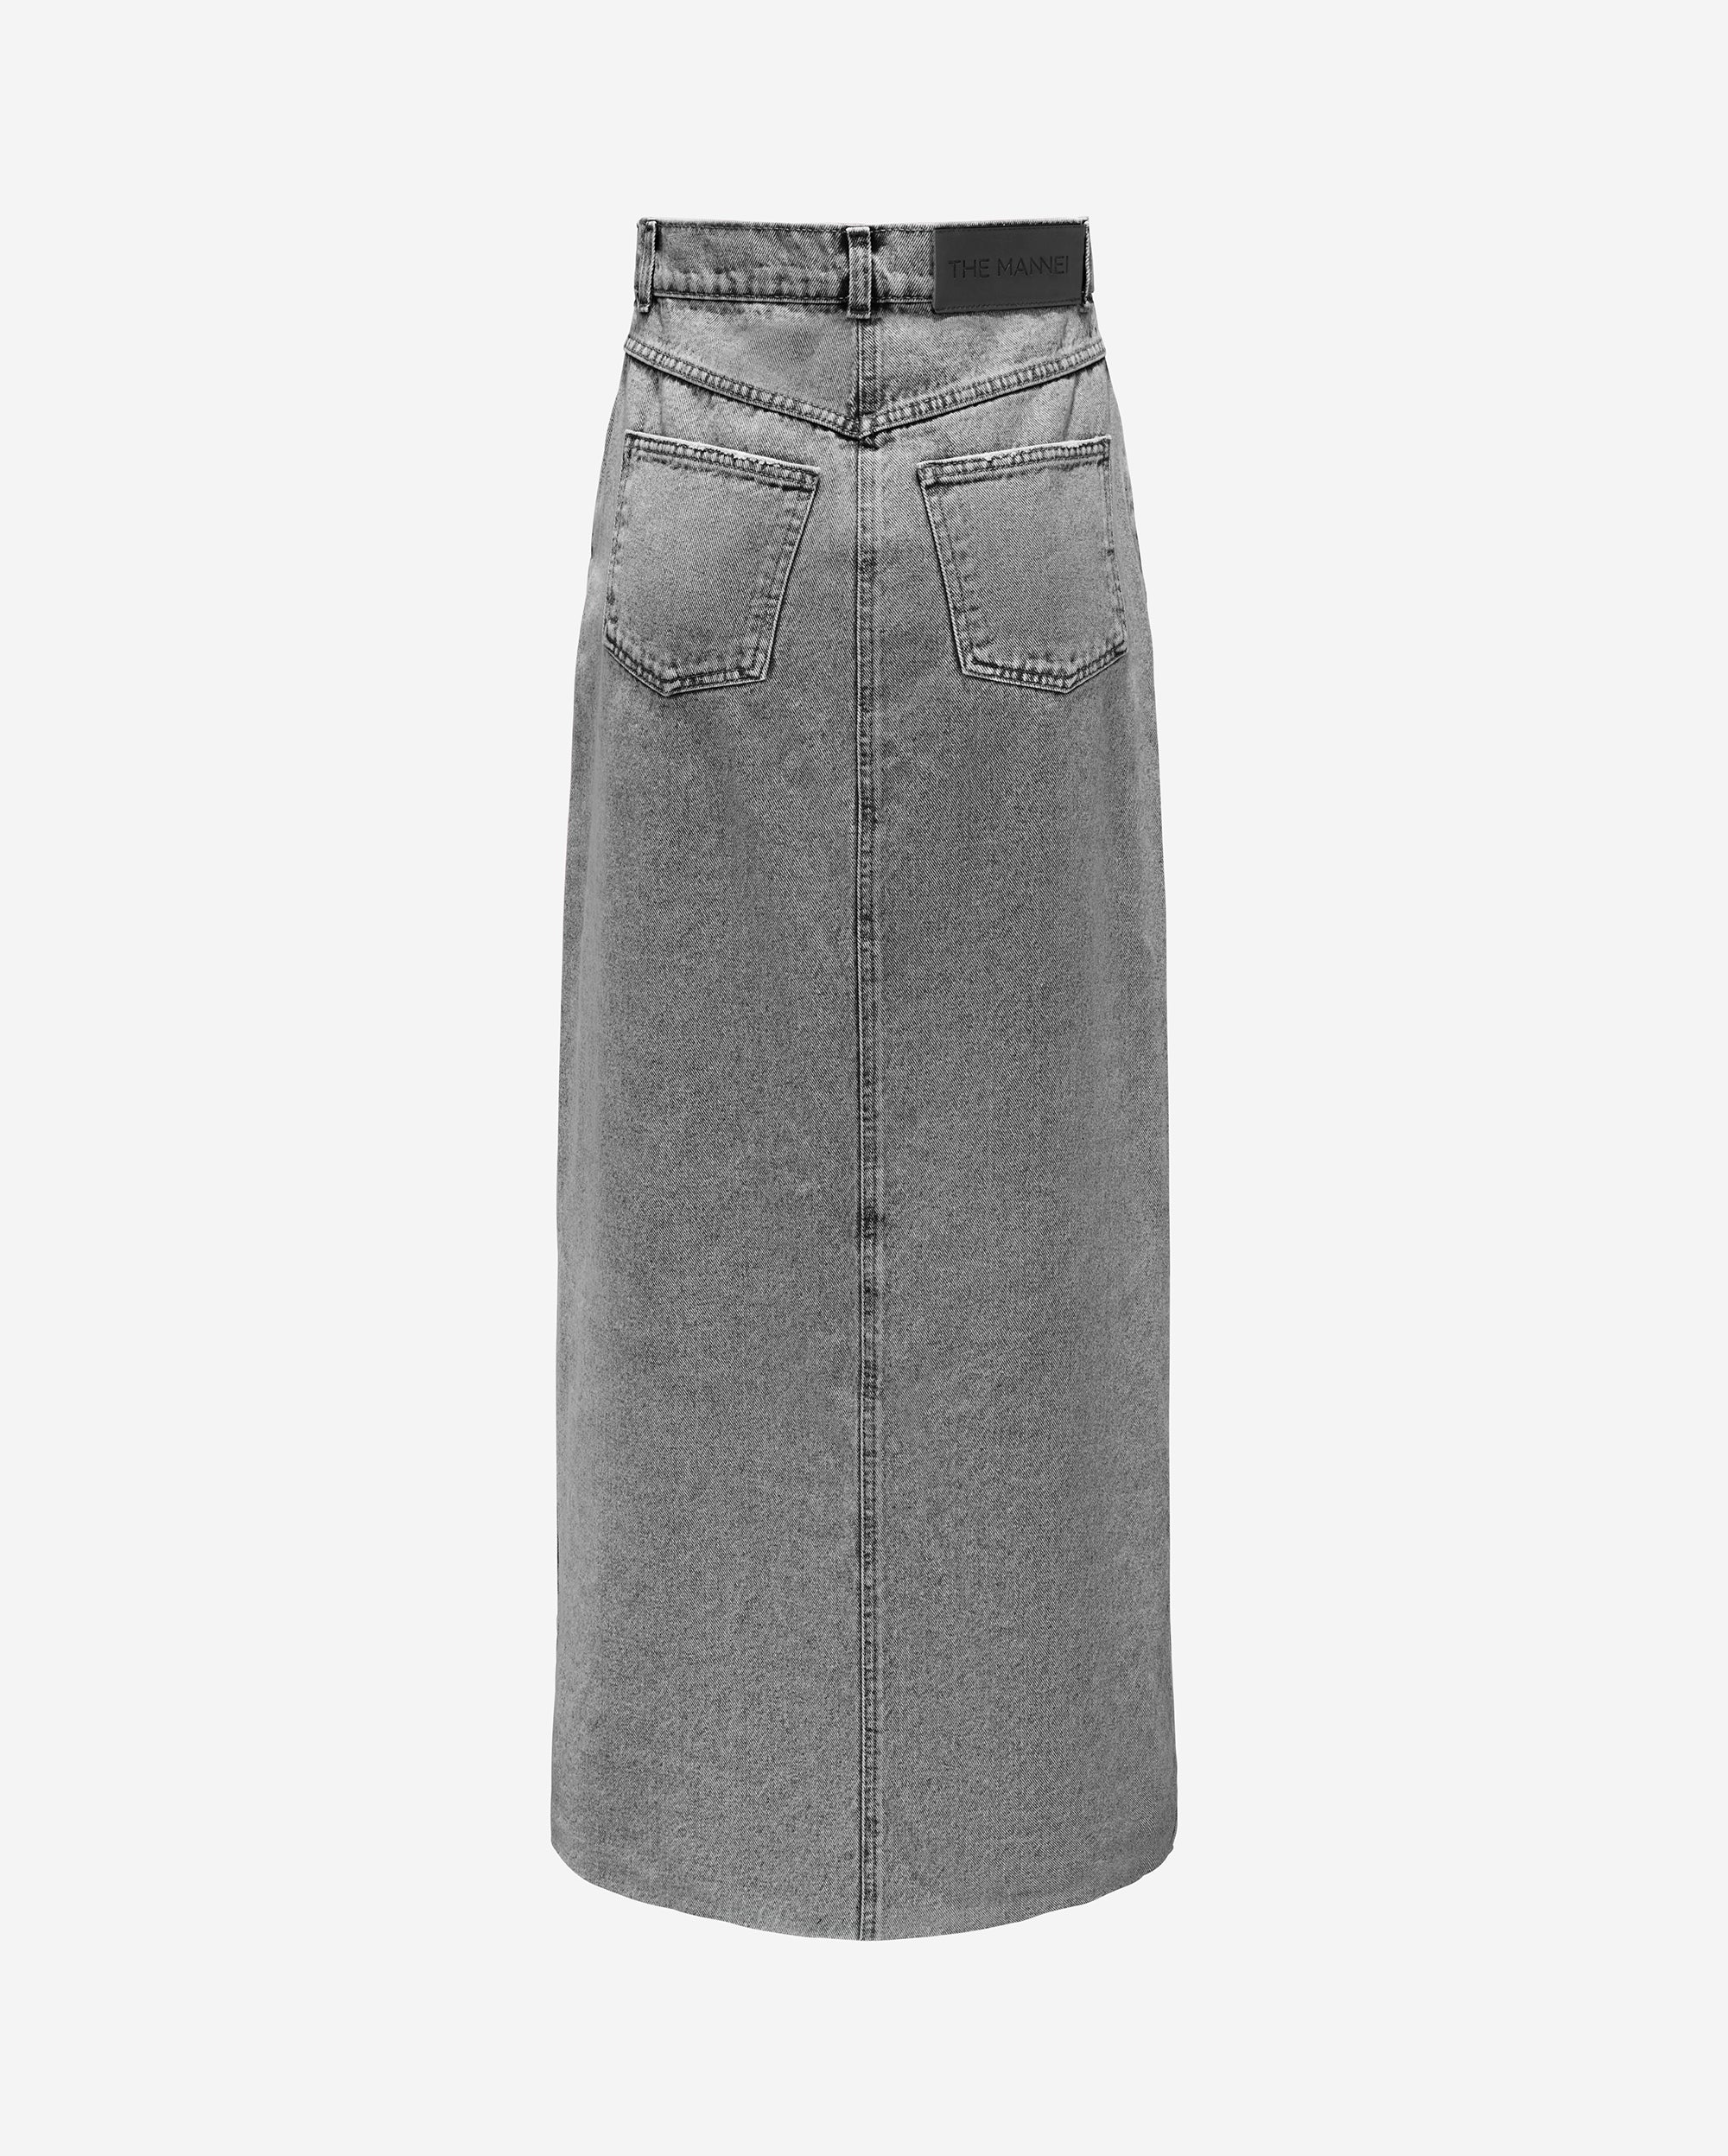 Aluta Long Skirt